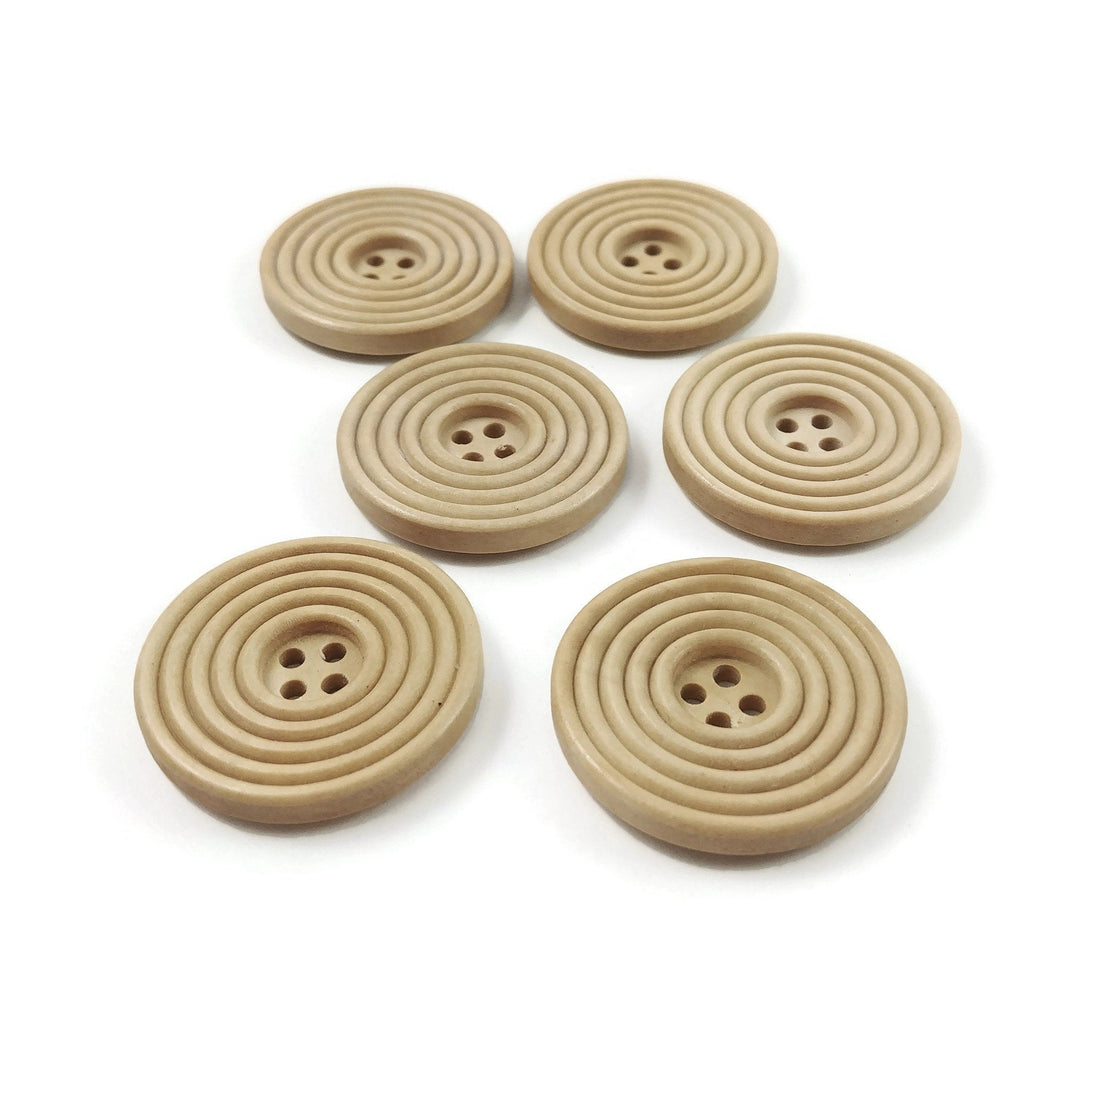 Bouton de bois de 3cm - ensemble de 6 boutons en bois naturel avec cercles